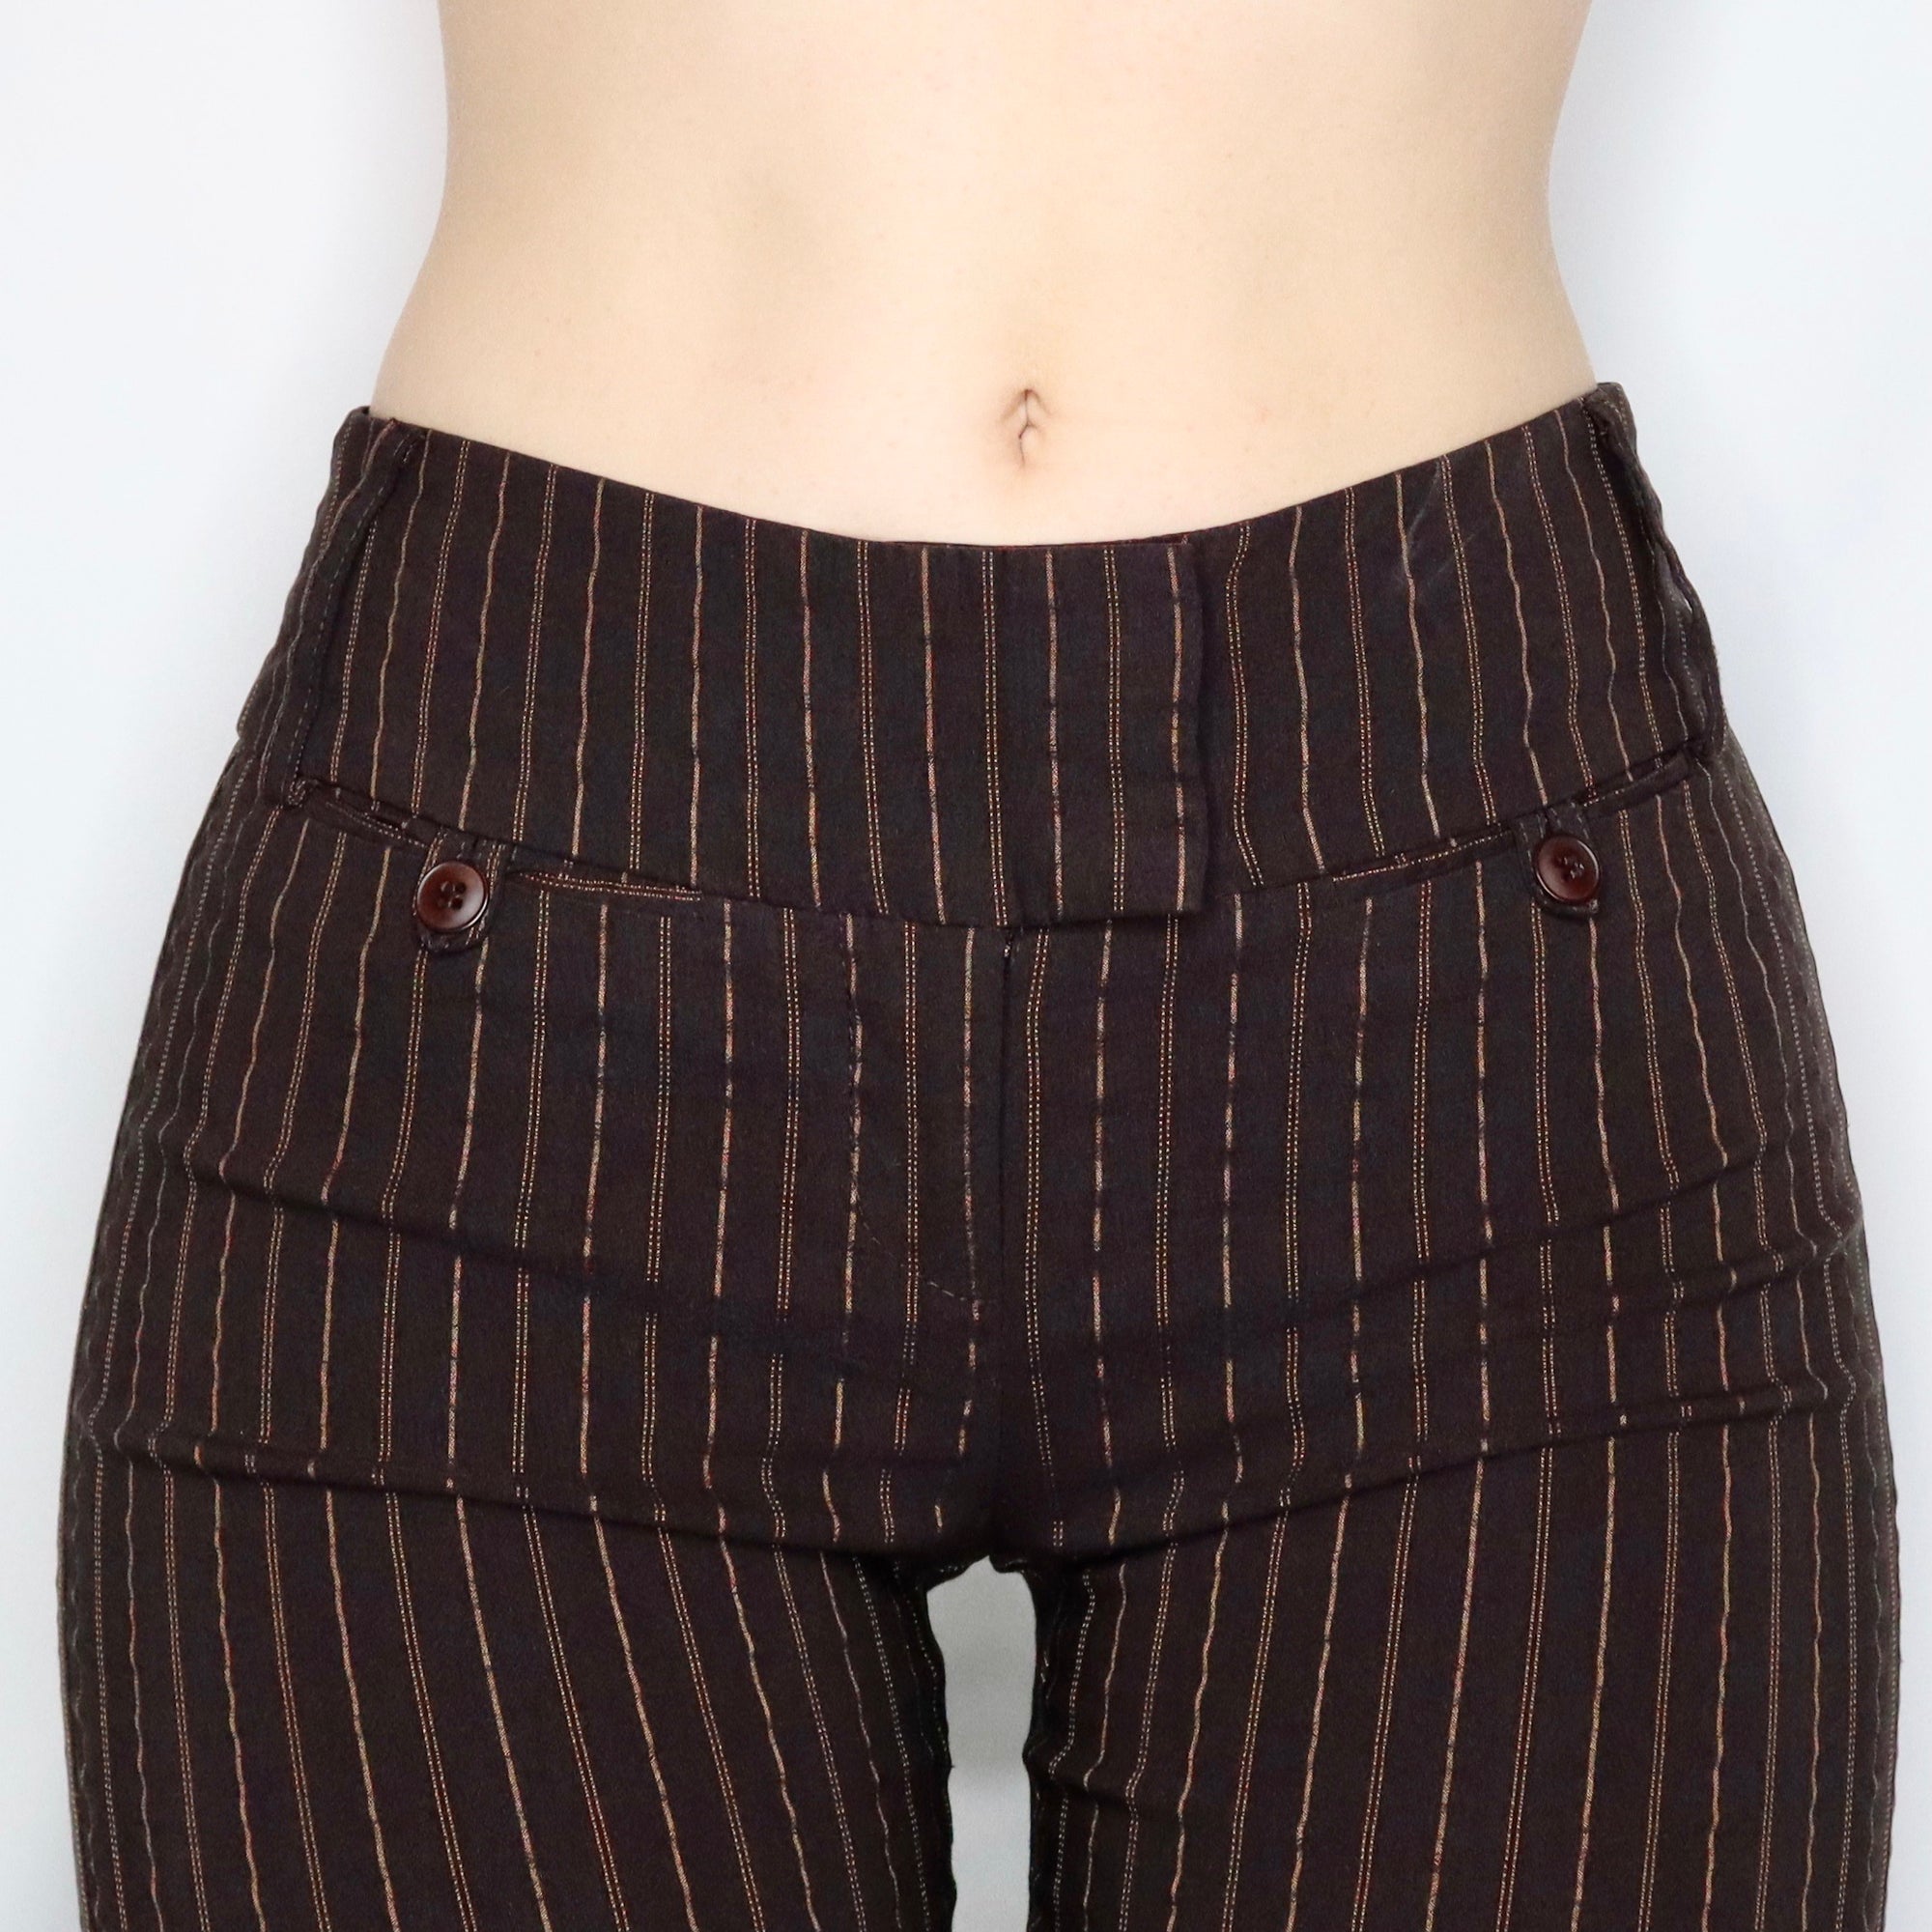 Vintage Y2K Stretchy Mid Rise Brown Pinstripe Flare Pants